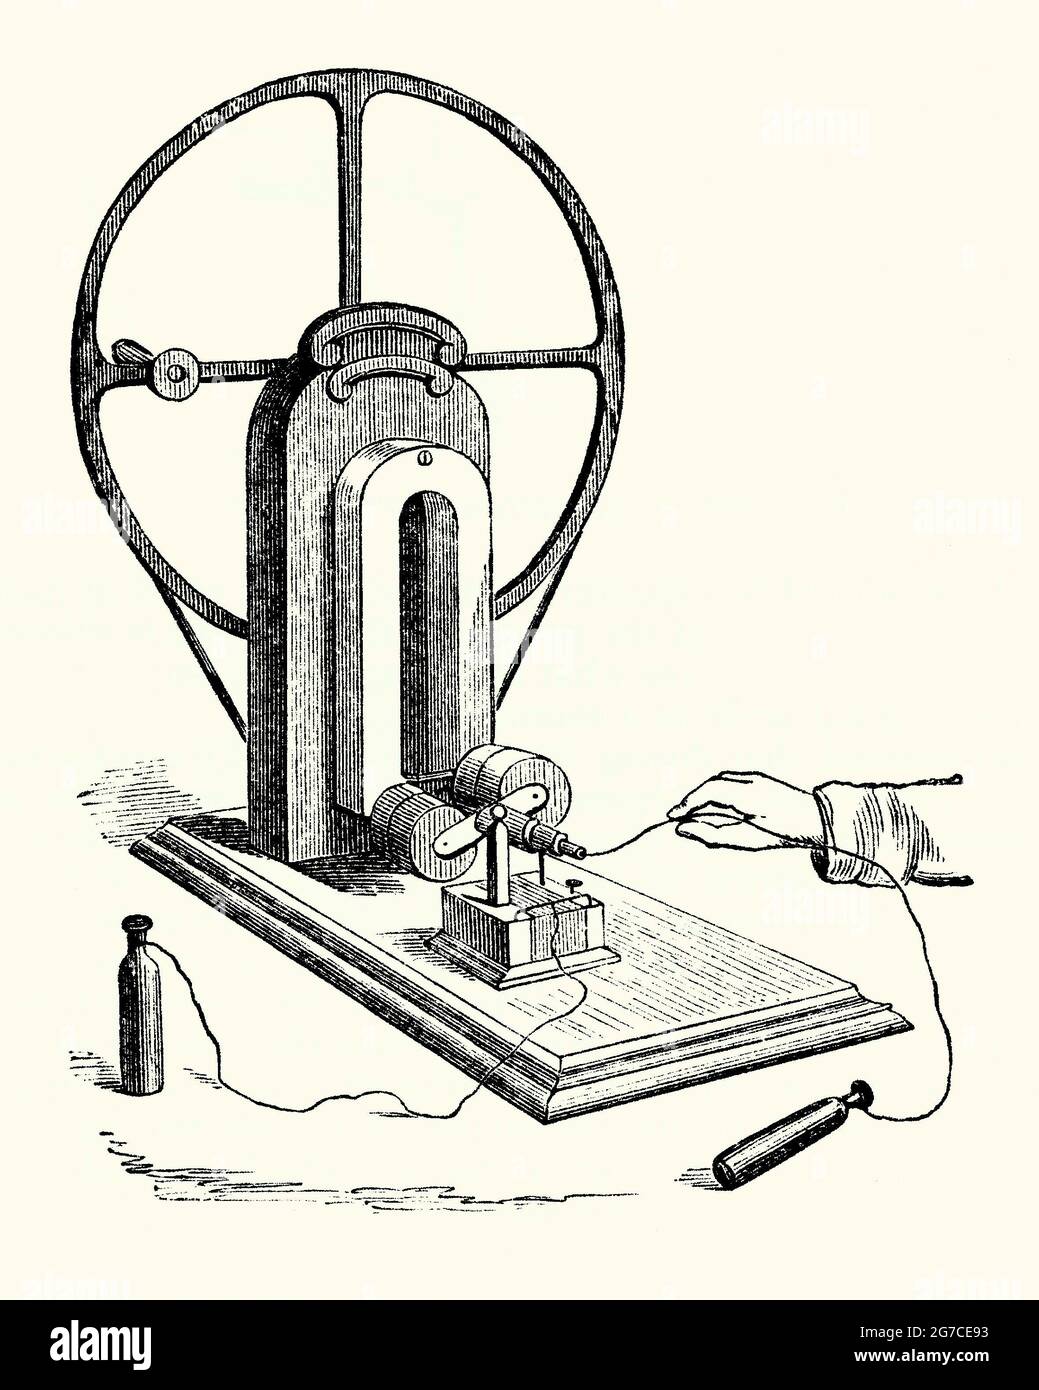 Una vecchia incisione che mostra la macchina magneto-elettrica di Clarke. E  'da un libro degli anni '90 del 1800 sulle scoperte e le invenzioni  vittoriane durante il 1800. Un magnete è un